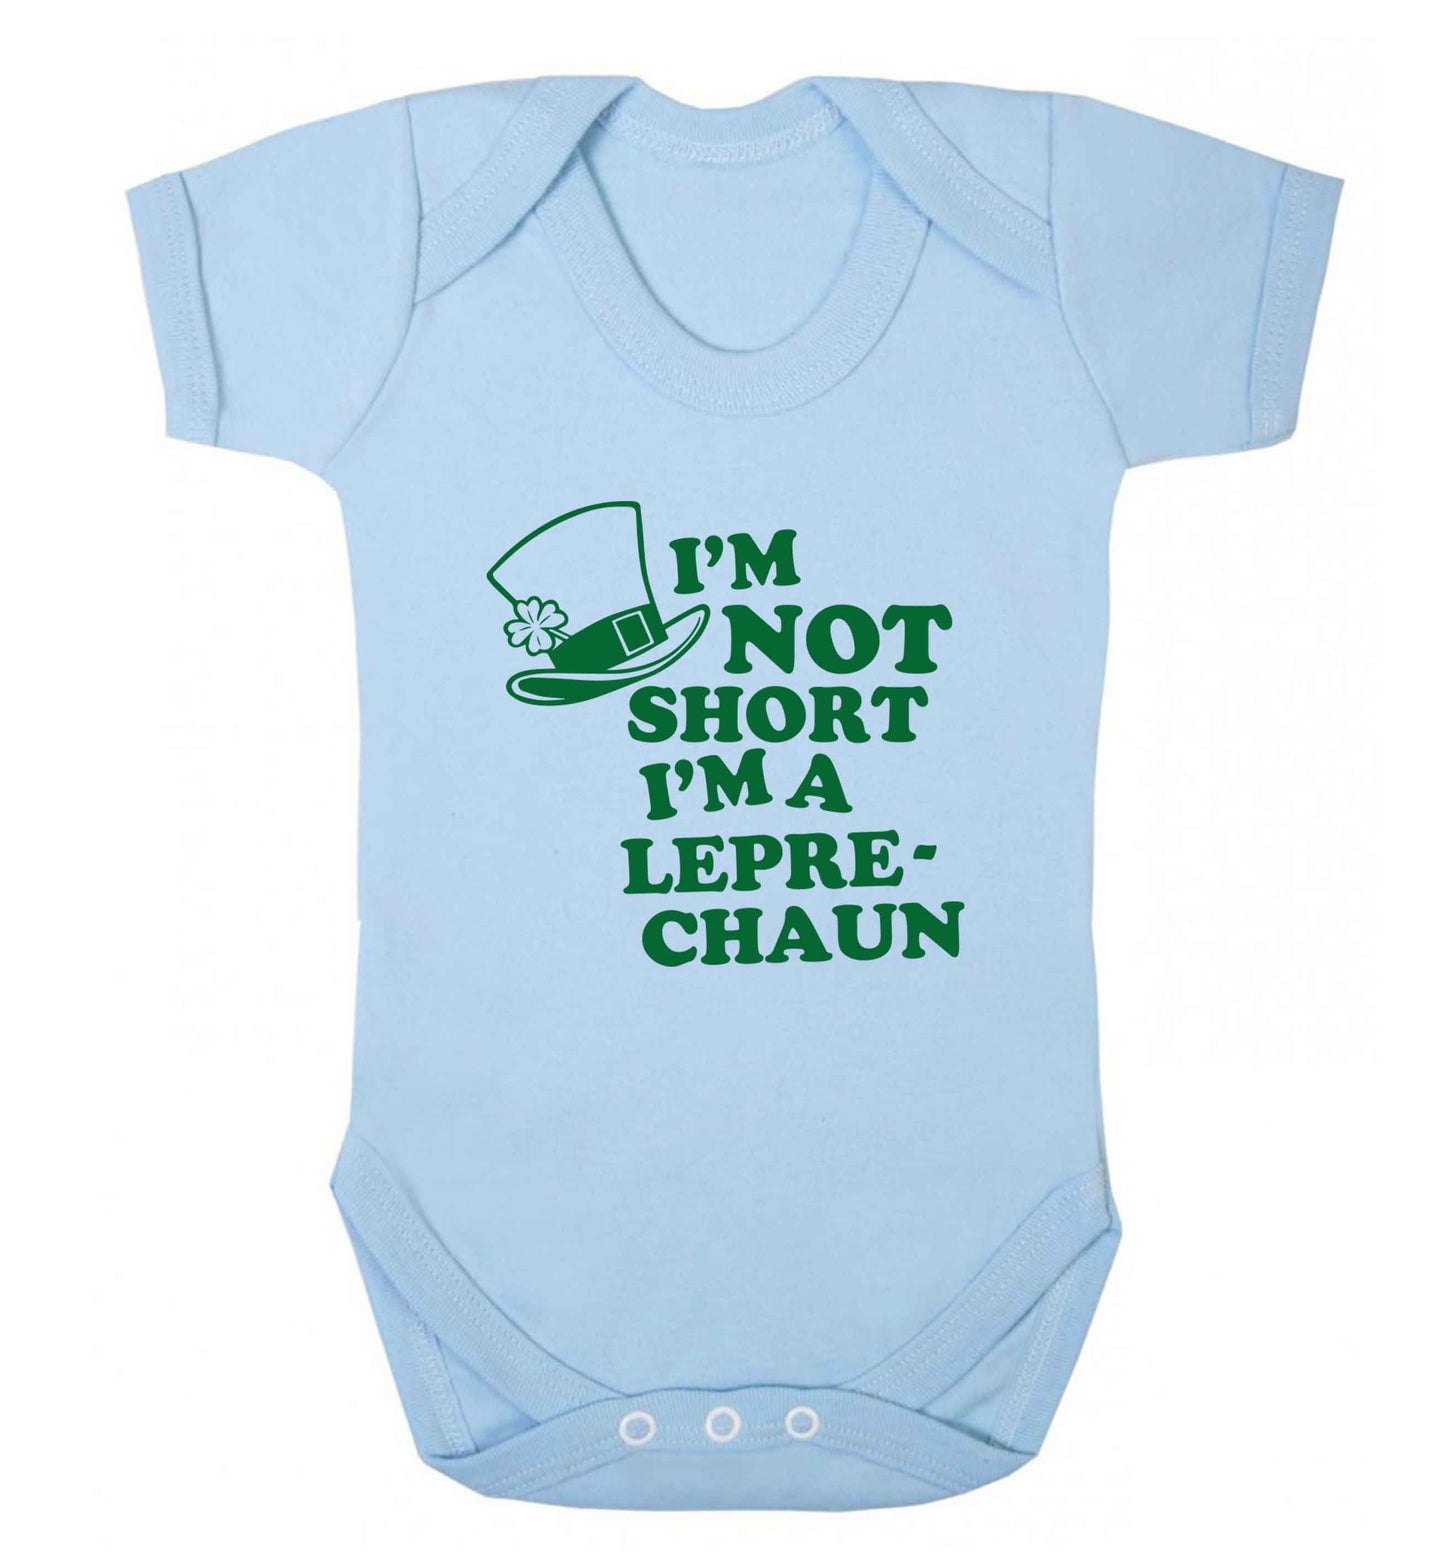 I'm not short I'm a leprechaun baby vest pale blue 18-24 months